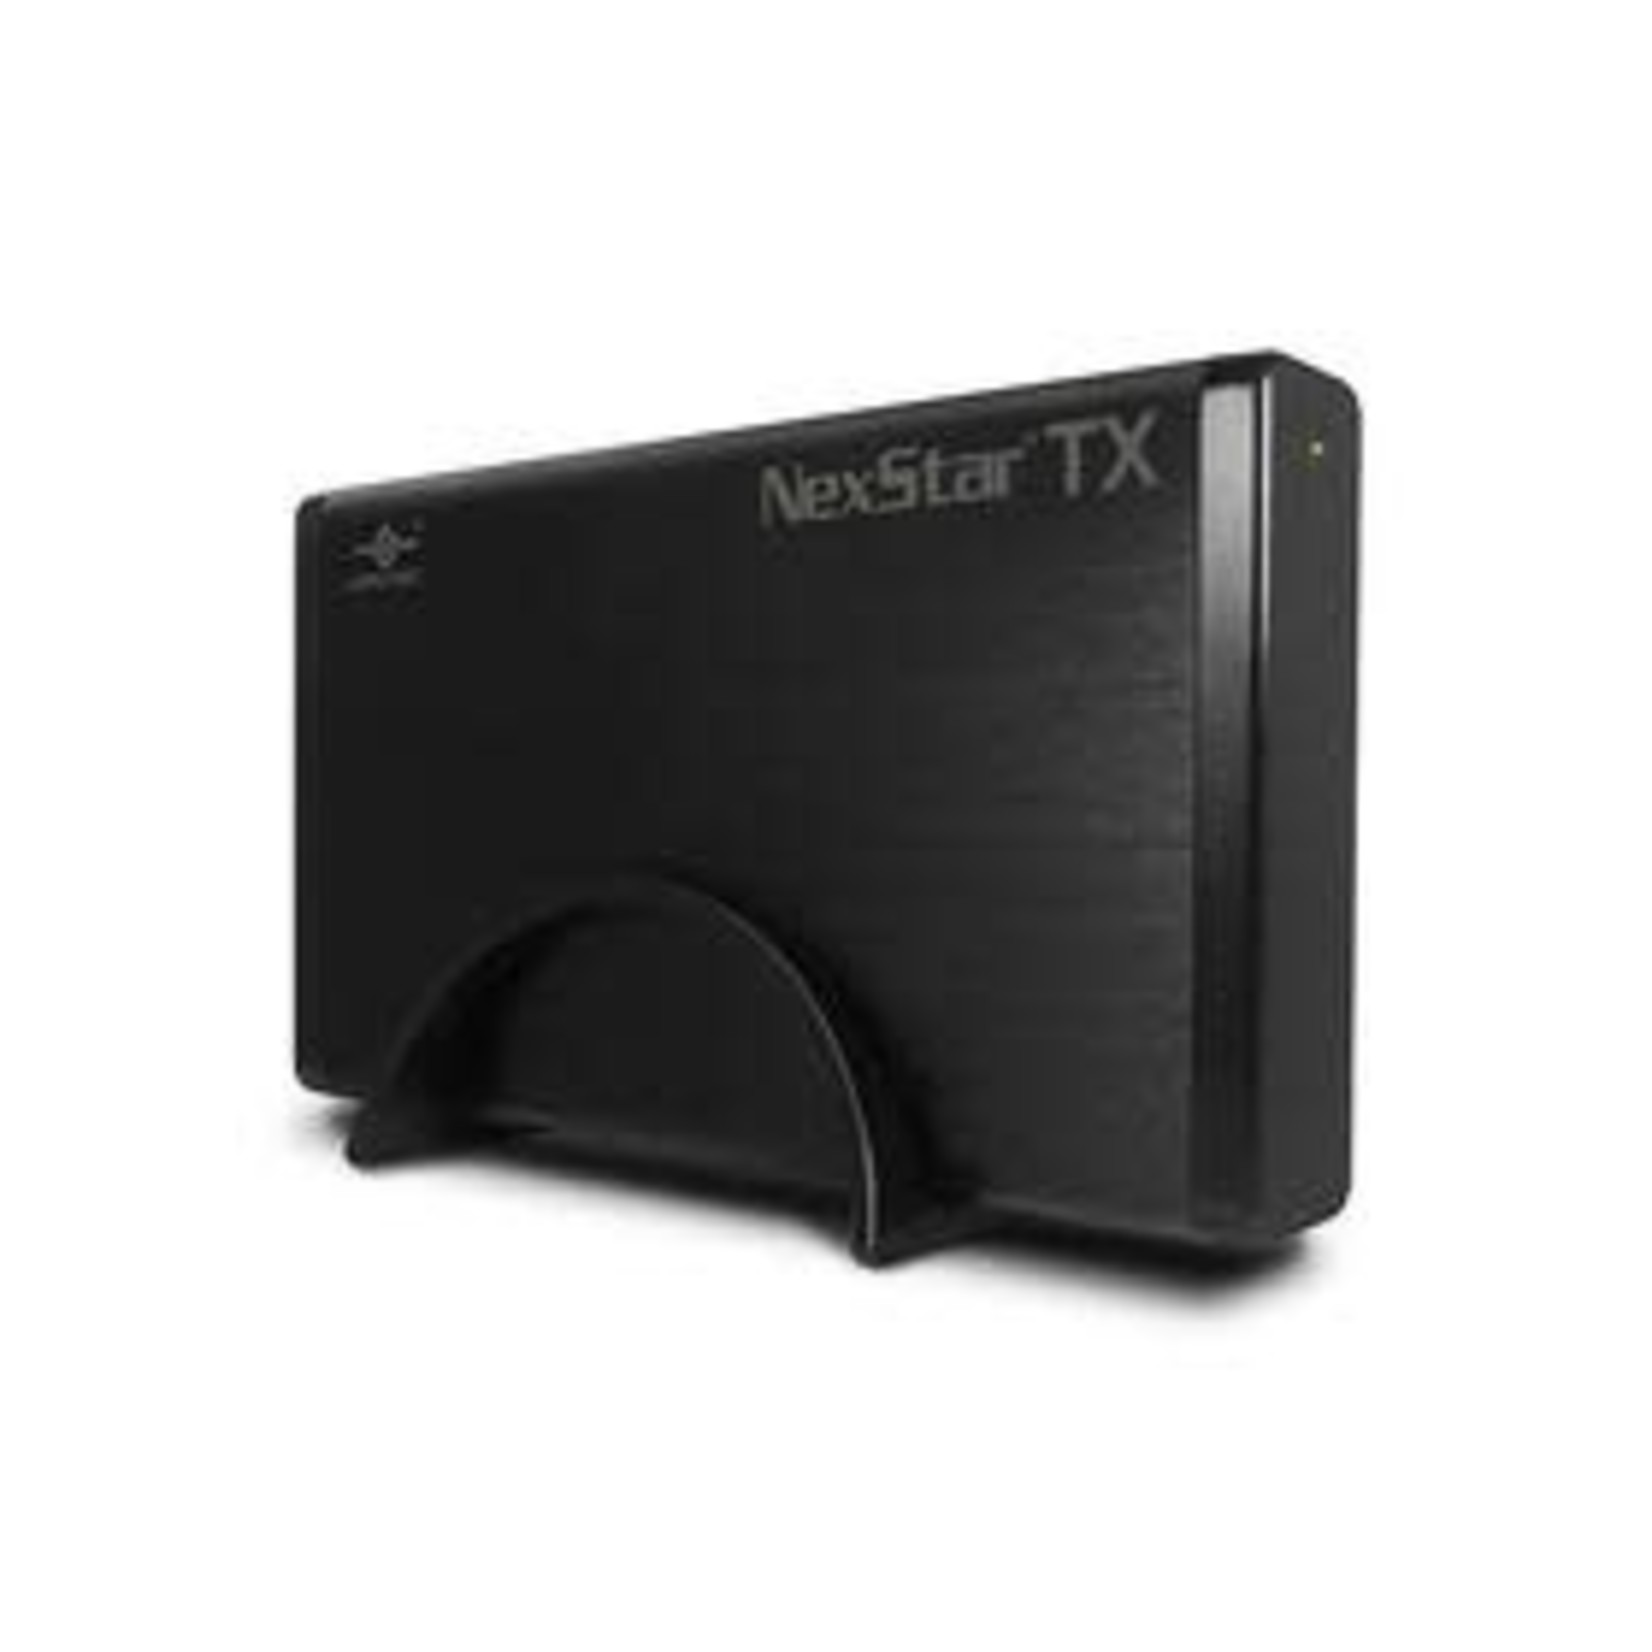 Vantec Vantec TX 3.5 inch SATA USB3 HDD Enclosure